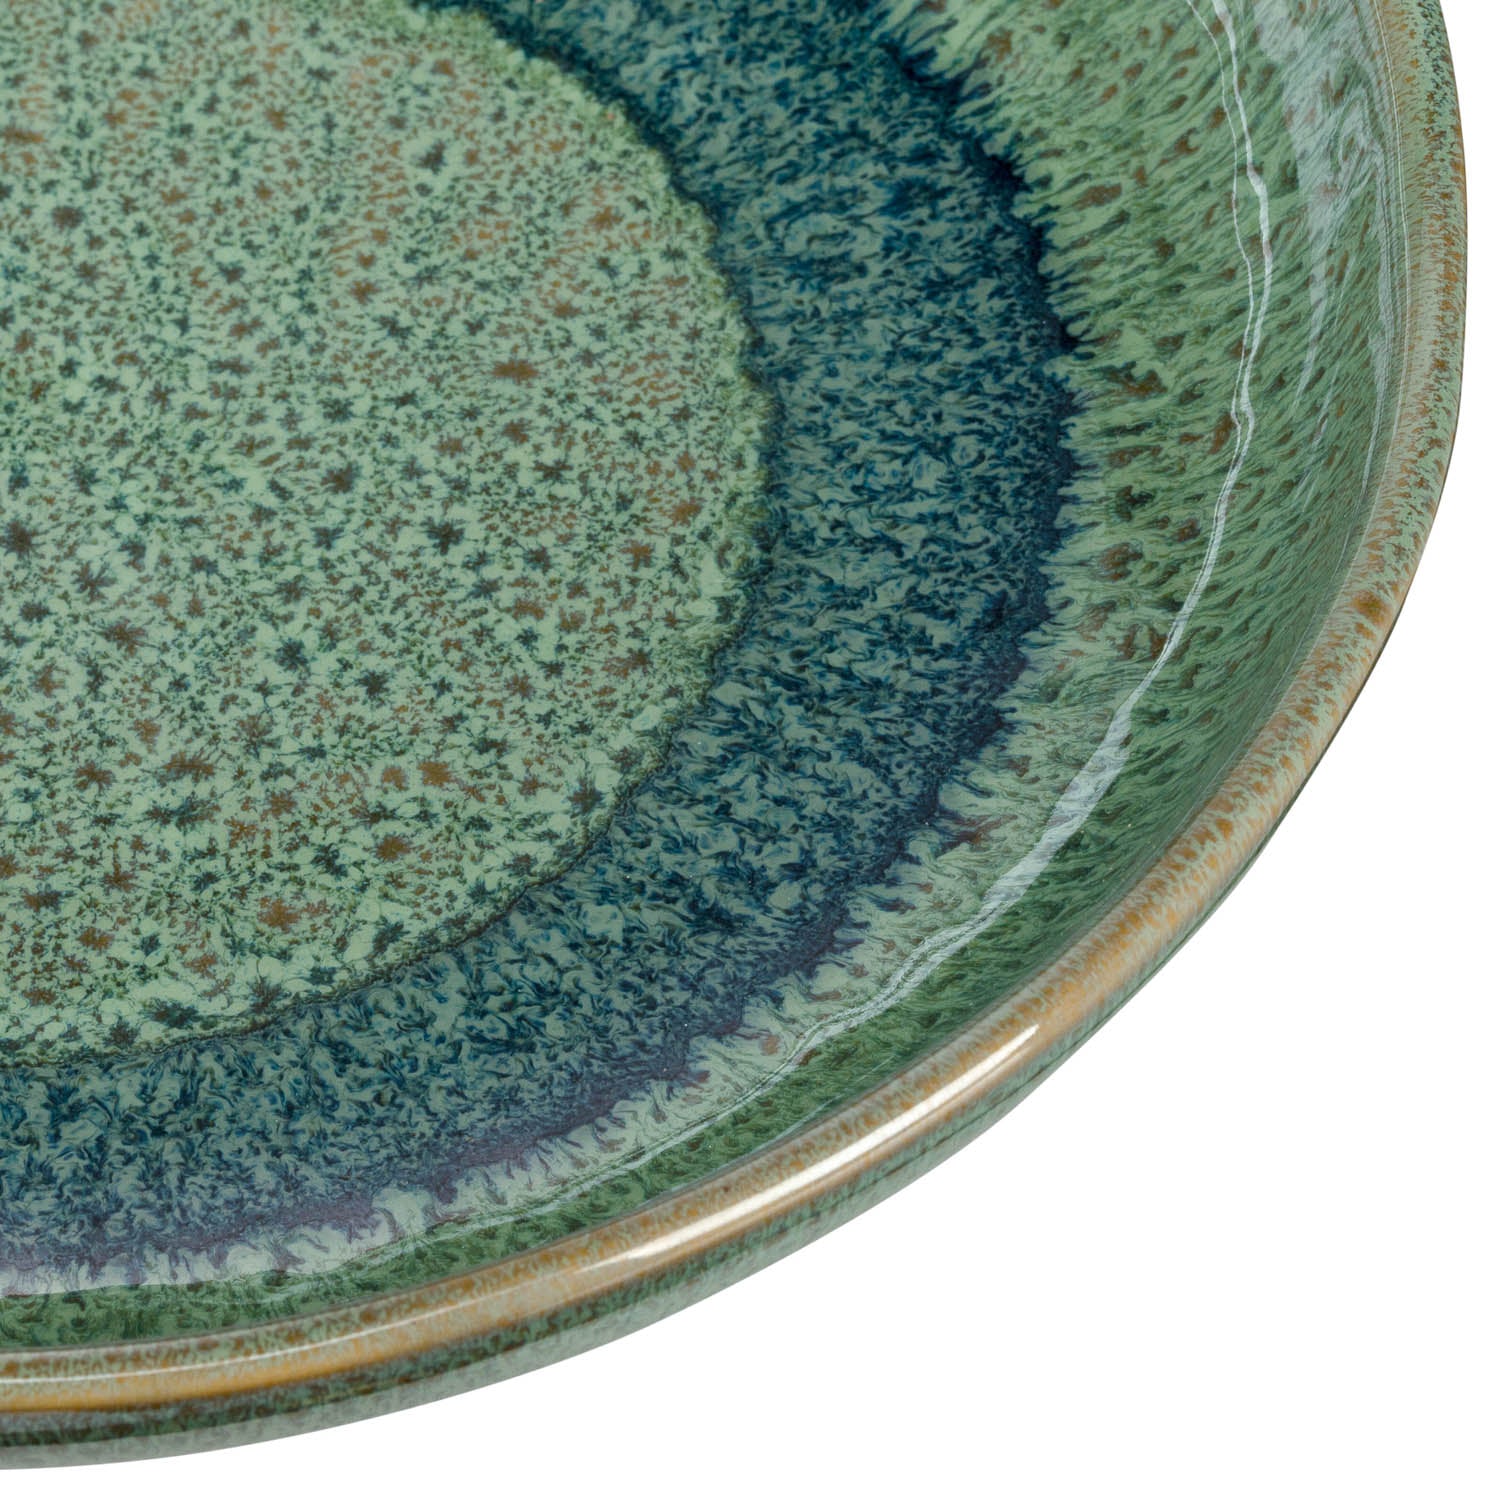 Keramikteller MATERA 20,7 cm grün Tief